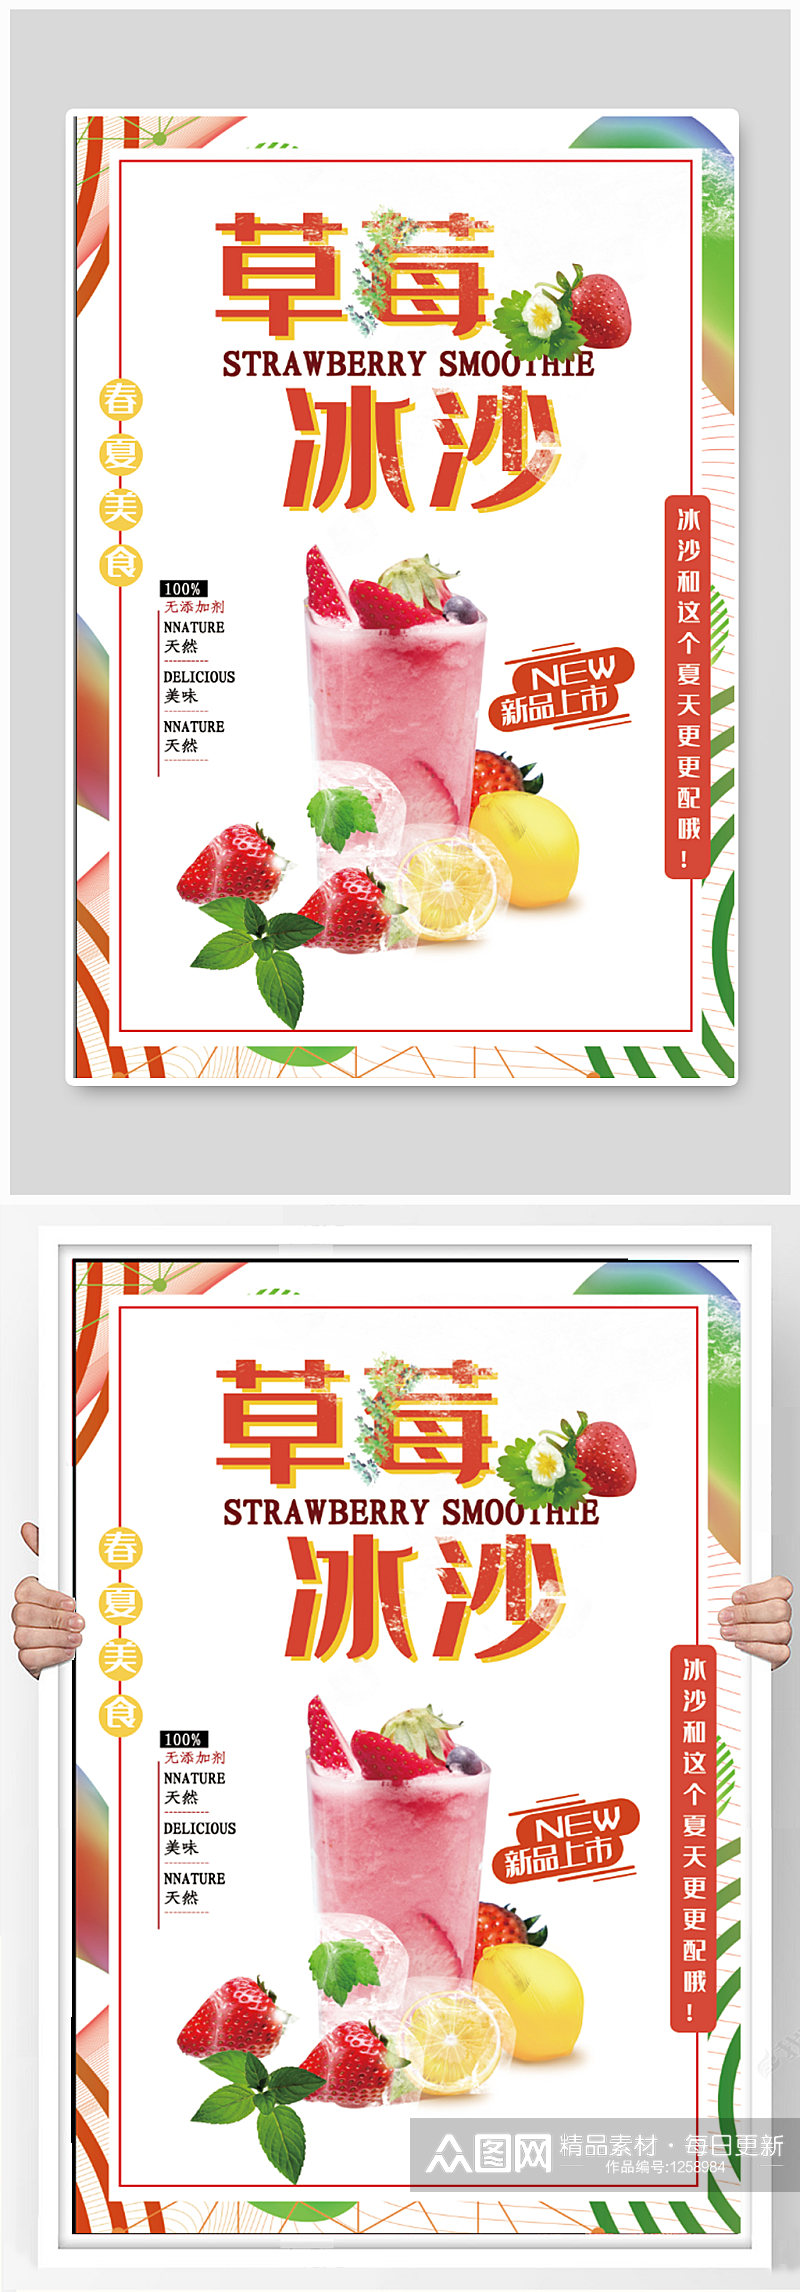 草莓冰沙饮品店奶茶店海报素材